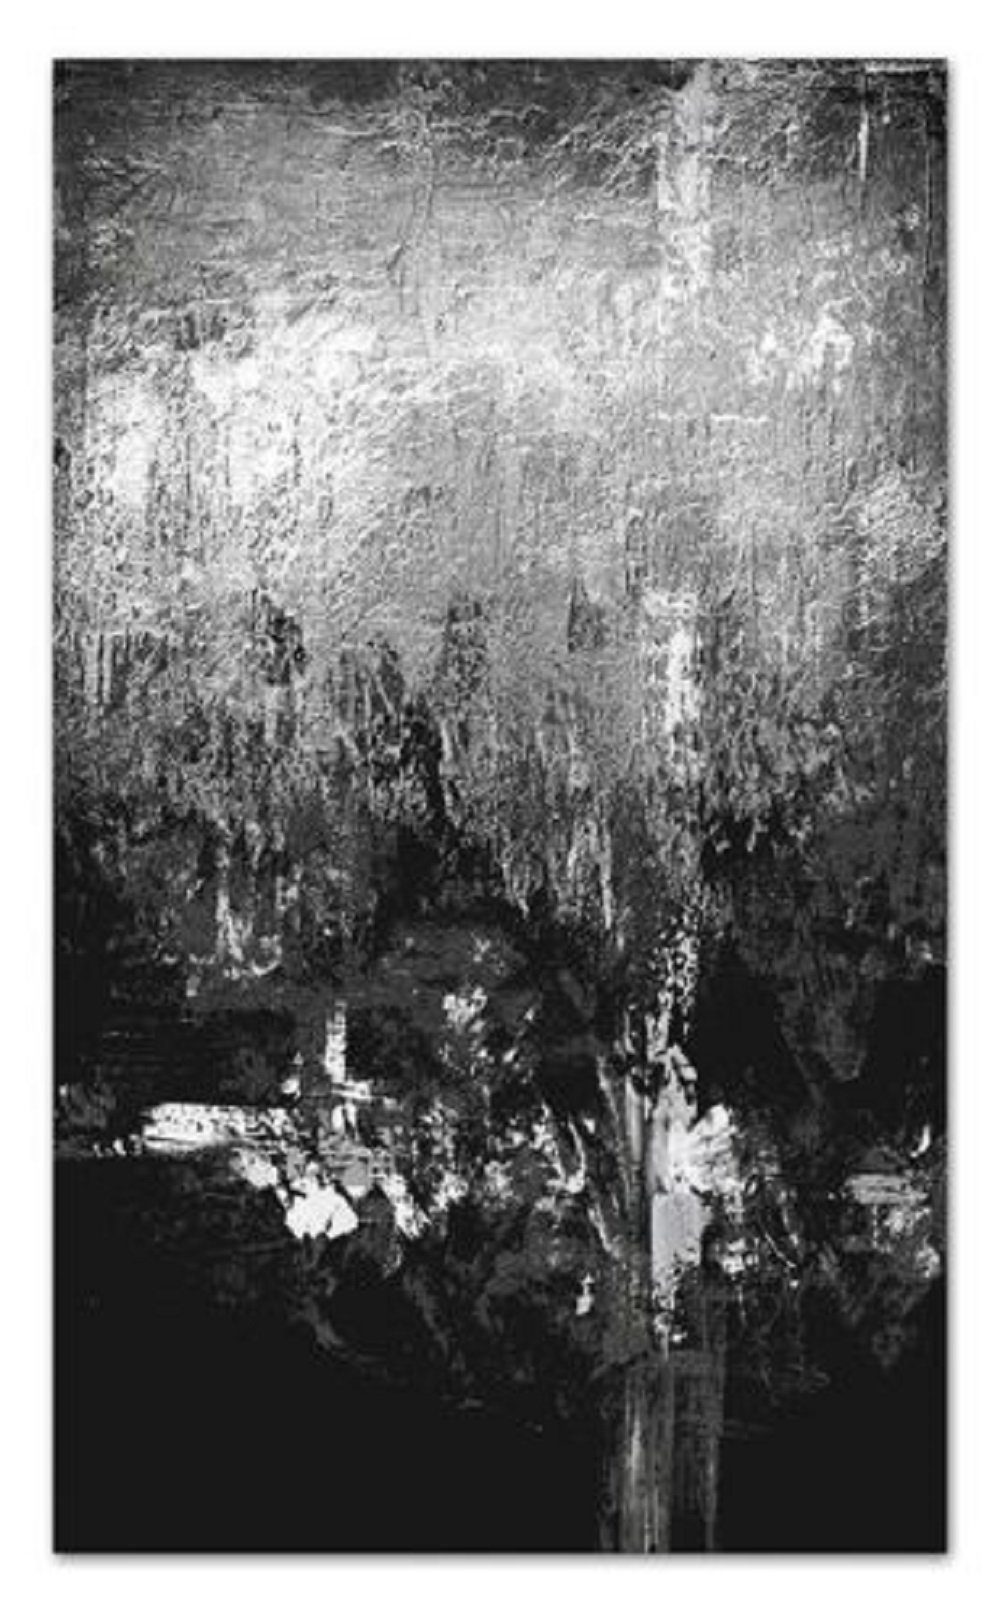 JVmoebel Ölbild Abstrakt Bild Handarbeit Keil Öl Gemälde Abstrakte Bilder G100079, Abstrakt